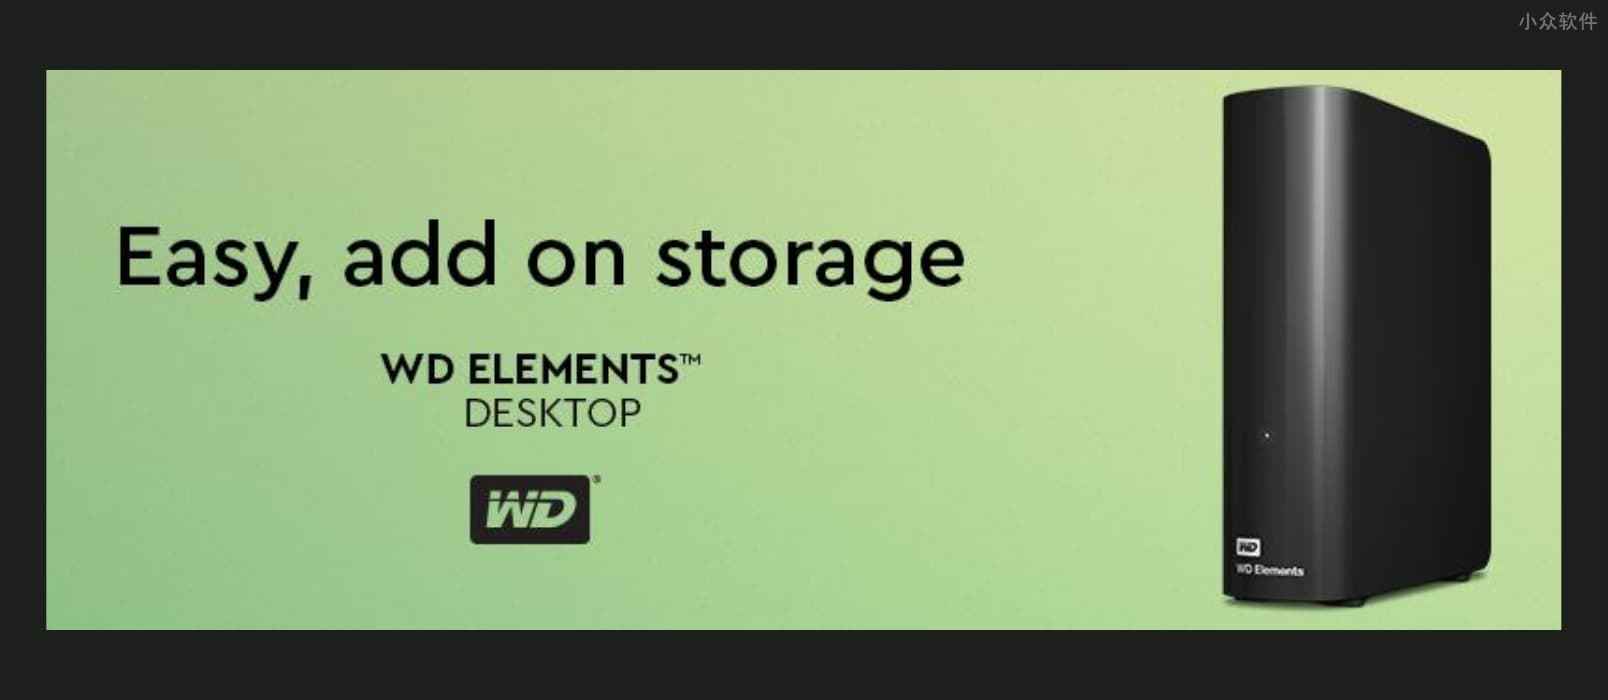 亚马逊镇店之宝：Western Digital 12TB Elements 外置硬盘 特价又来了